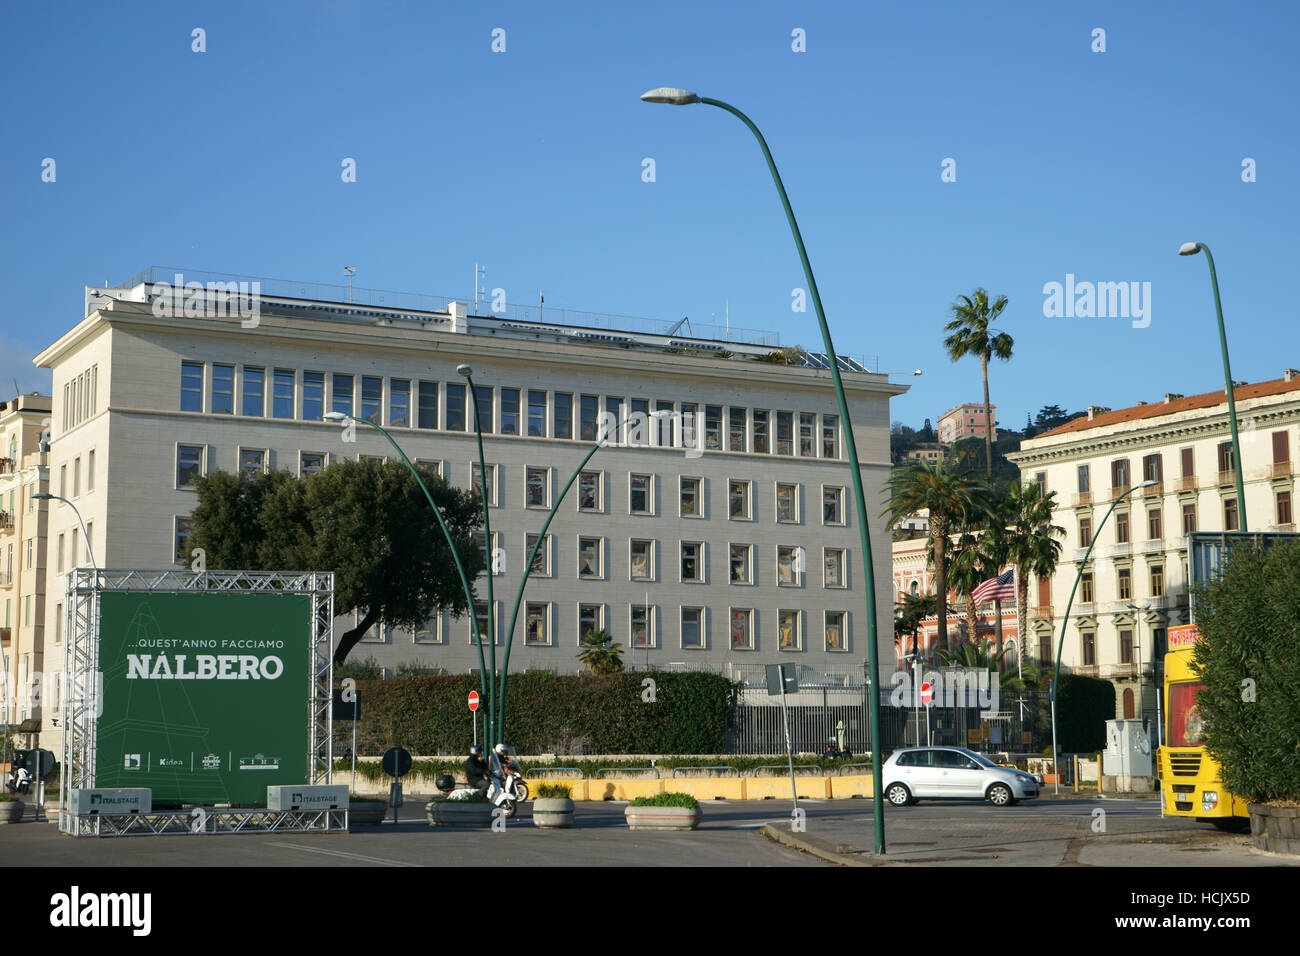 Us consulate italy immagini e fotografie stock ad alta risoluzione - Alamy